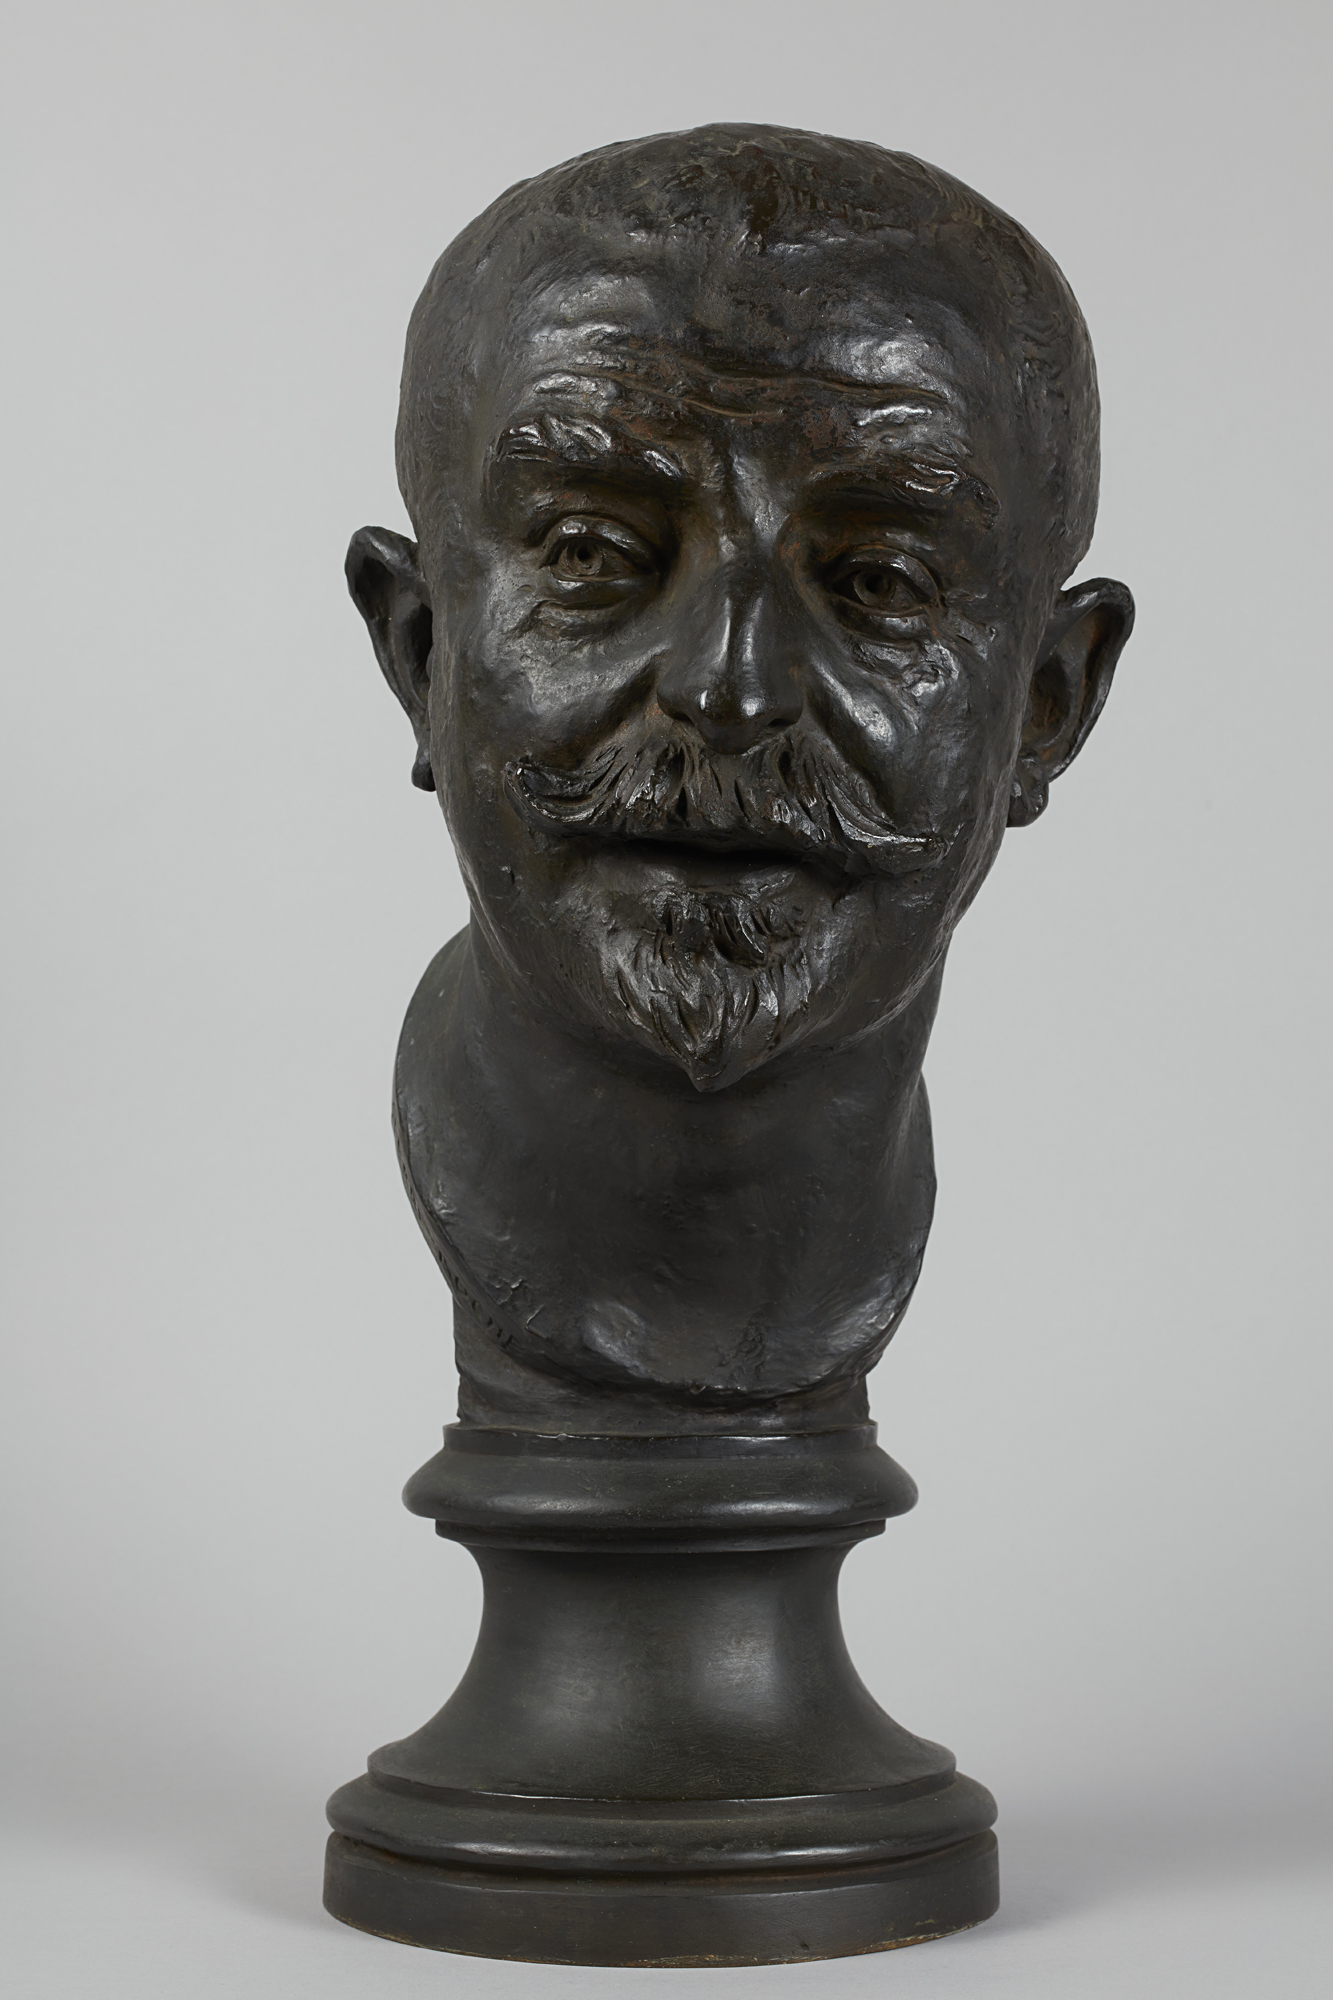 Roche, Pierre (1855 - 1922-01-18), Buste de Joris-Karl Huysmans (Titre principal), 1900. Bronze. Petit Palais, Musée des Beaux-Arts de la Ville de Paris.